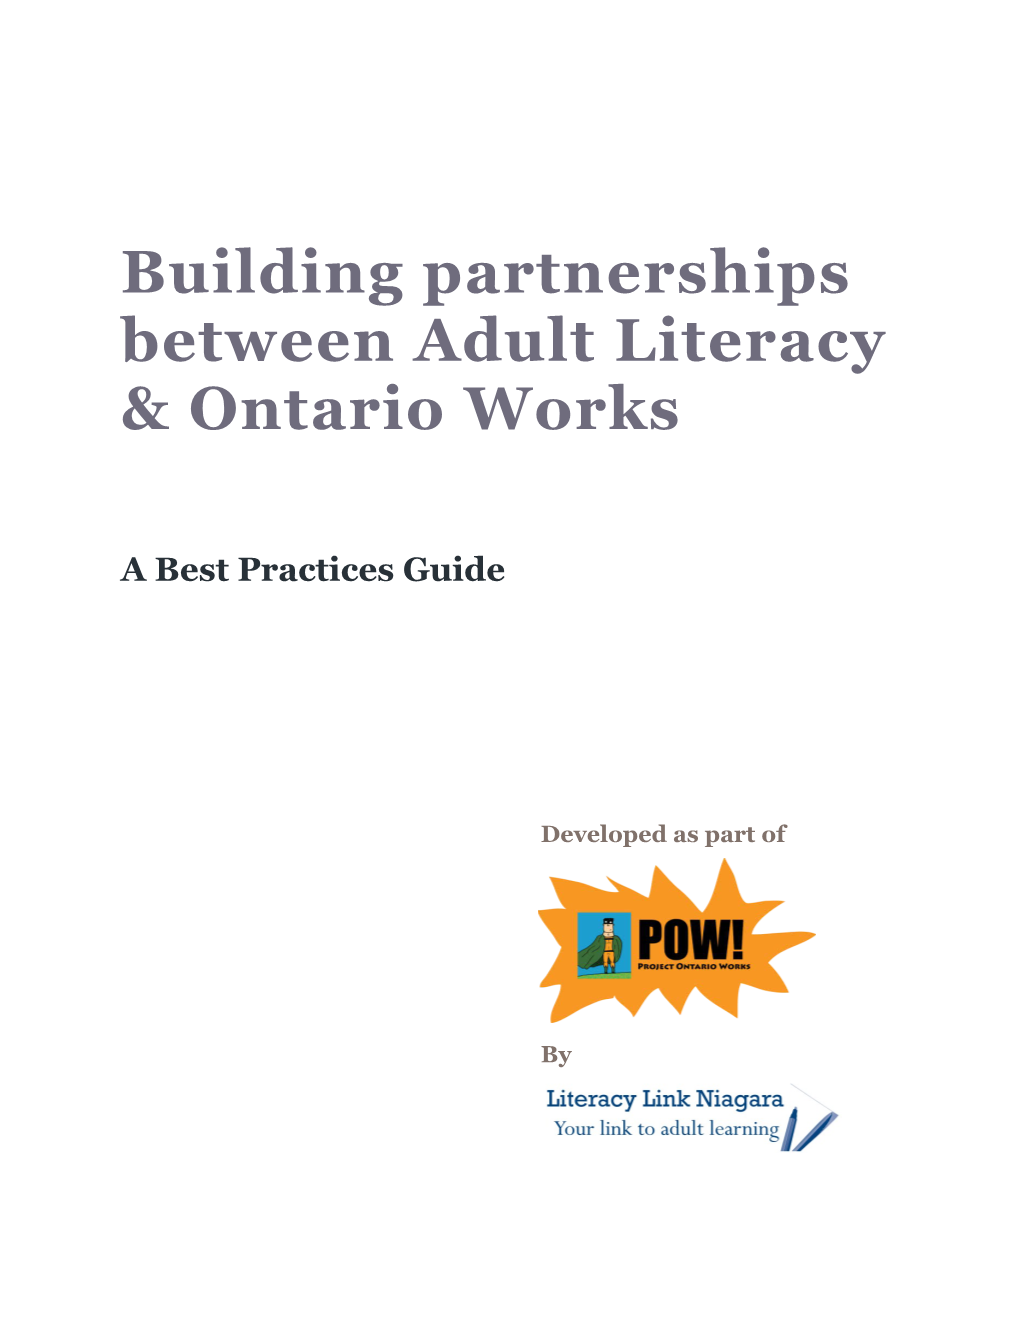 Building Partnerships Between Adult Literacy & Ontario Works